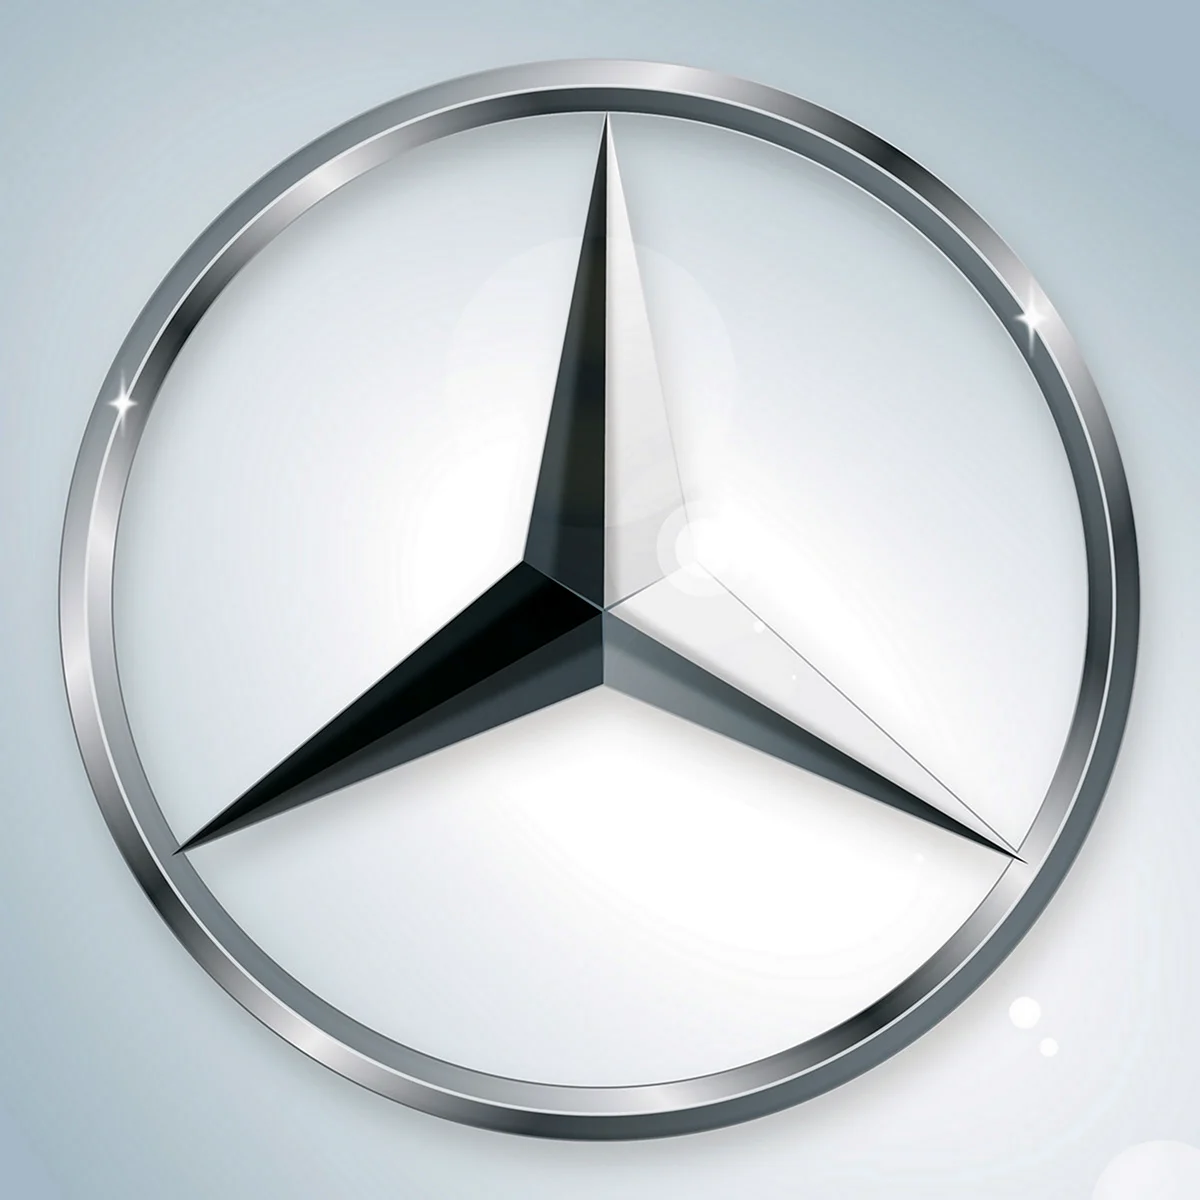 Mercedes значок